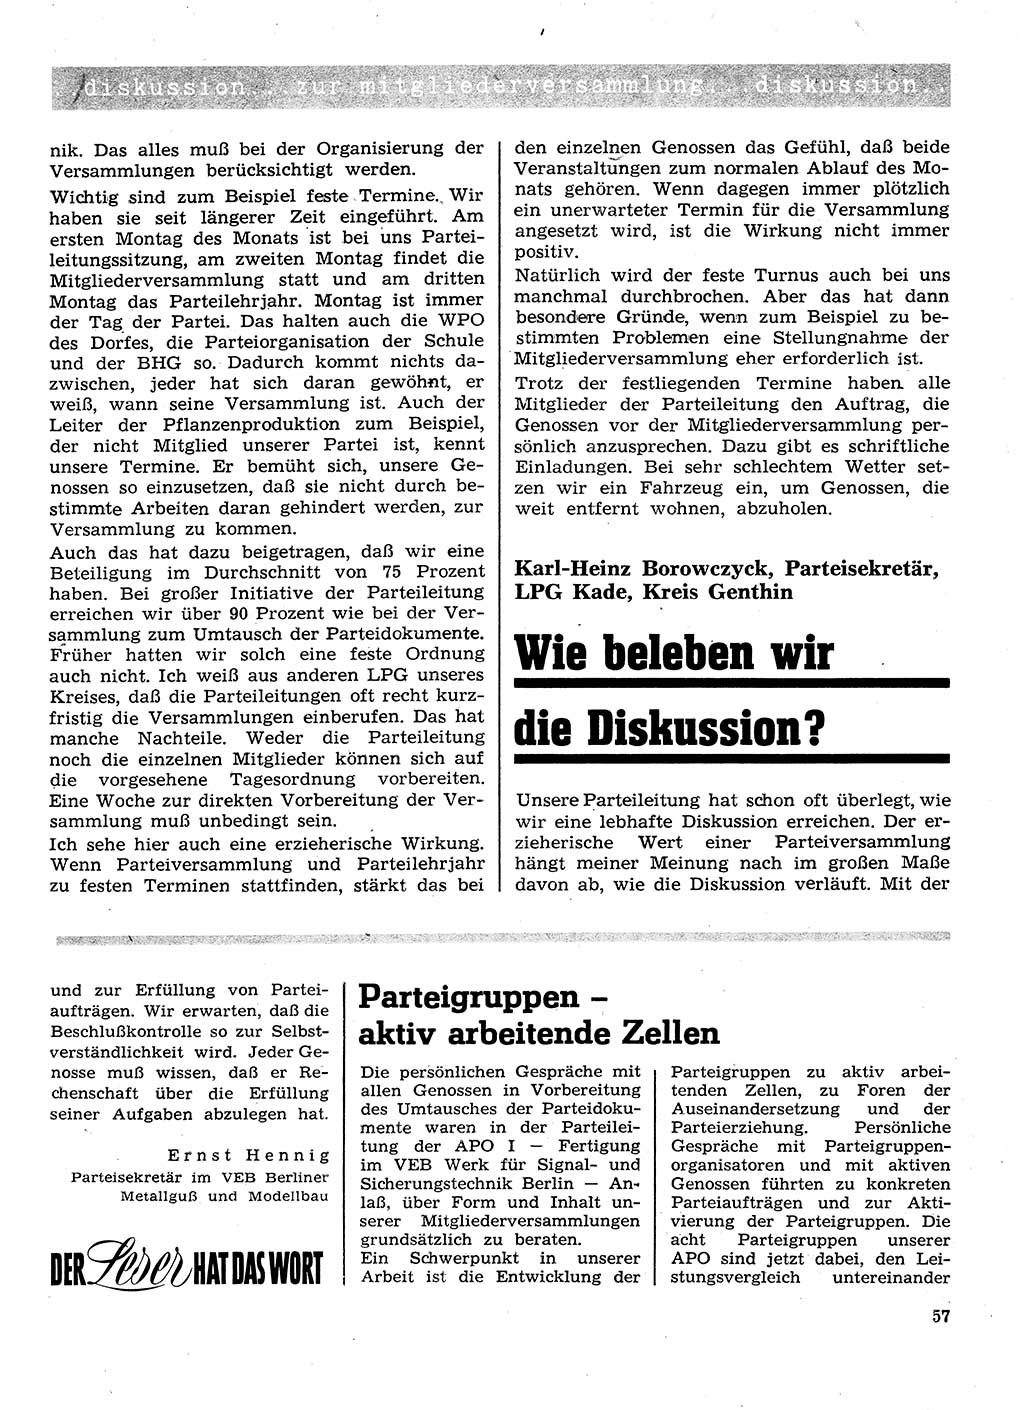 Neuer Weg (NW), Organ des Zentralkomitees (ZK) der SED (Sozialistische Einheitspartei Deutschlands) für Fragen des Parteilebens, 26. Jahrgang [Deutsche Demokratische Republik (DDR)] 1971, Seite 57 (NW ZK SED DDR 1971, S. 57)